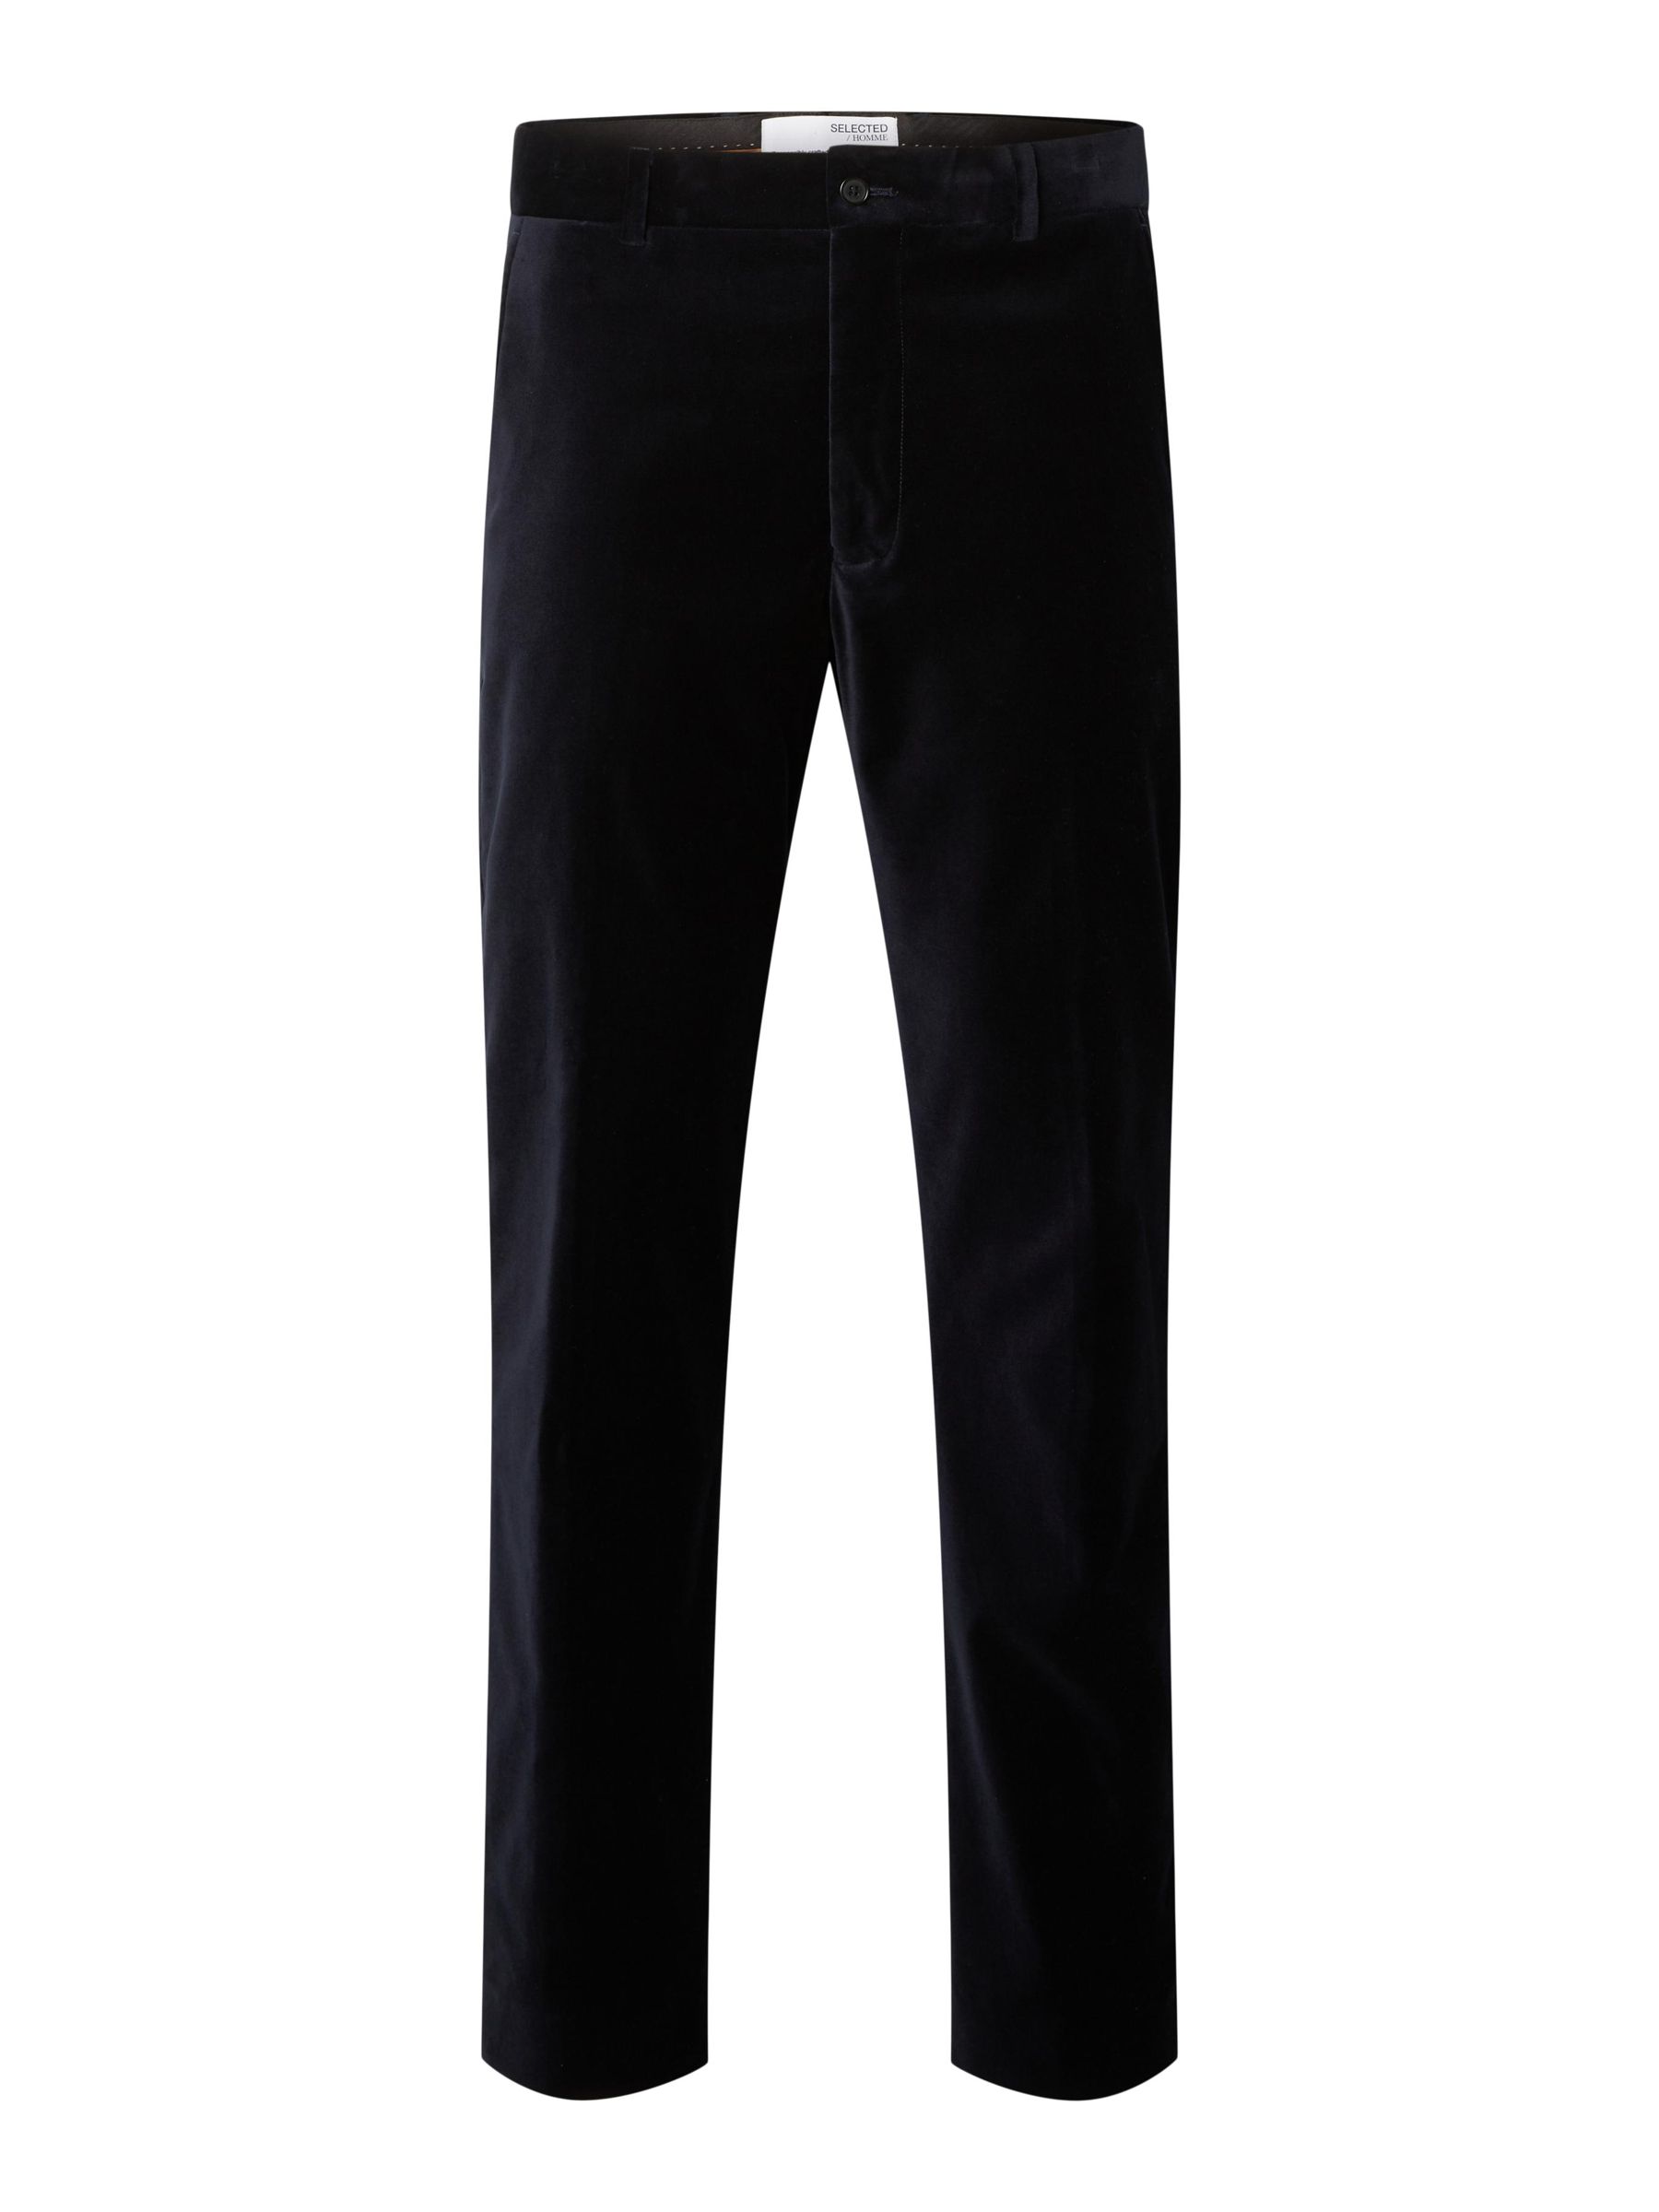 J.LINDEBERG LIAM VELVET PANTS - Suit trousers - black - Zalando.de